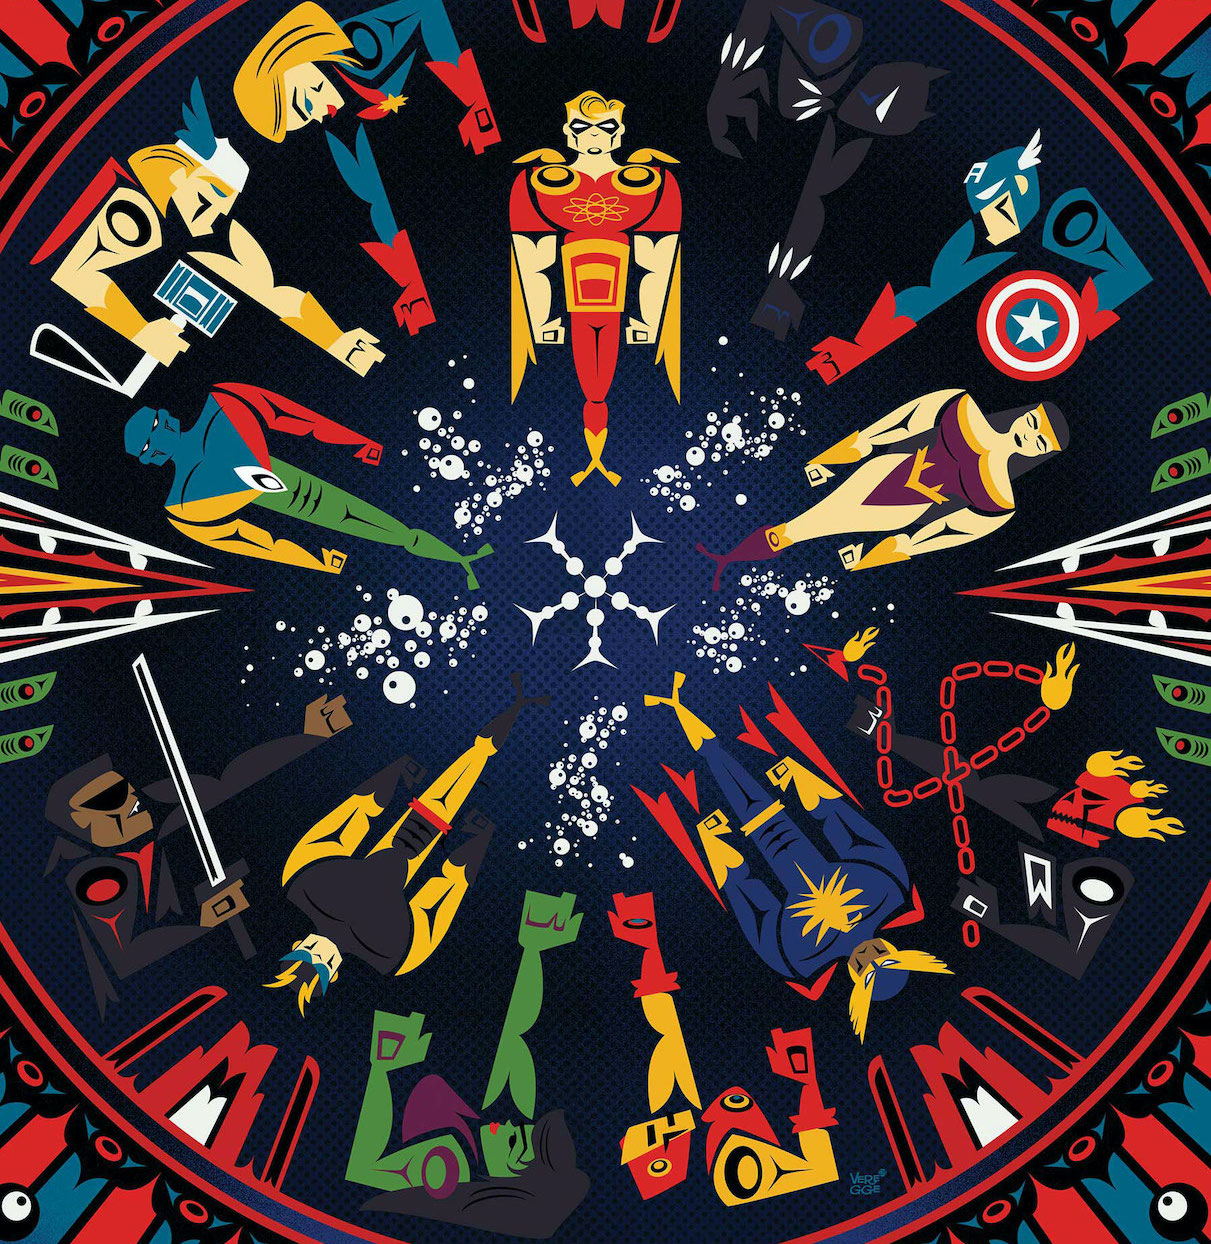 Marvel's 'Heroes Reborn' to get Jeffrey Veregge variant covers